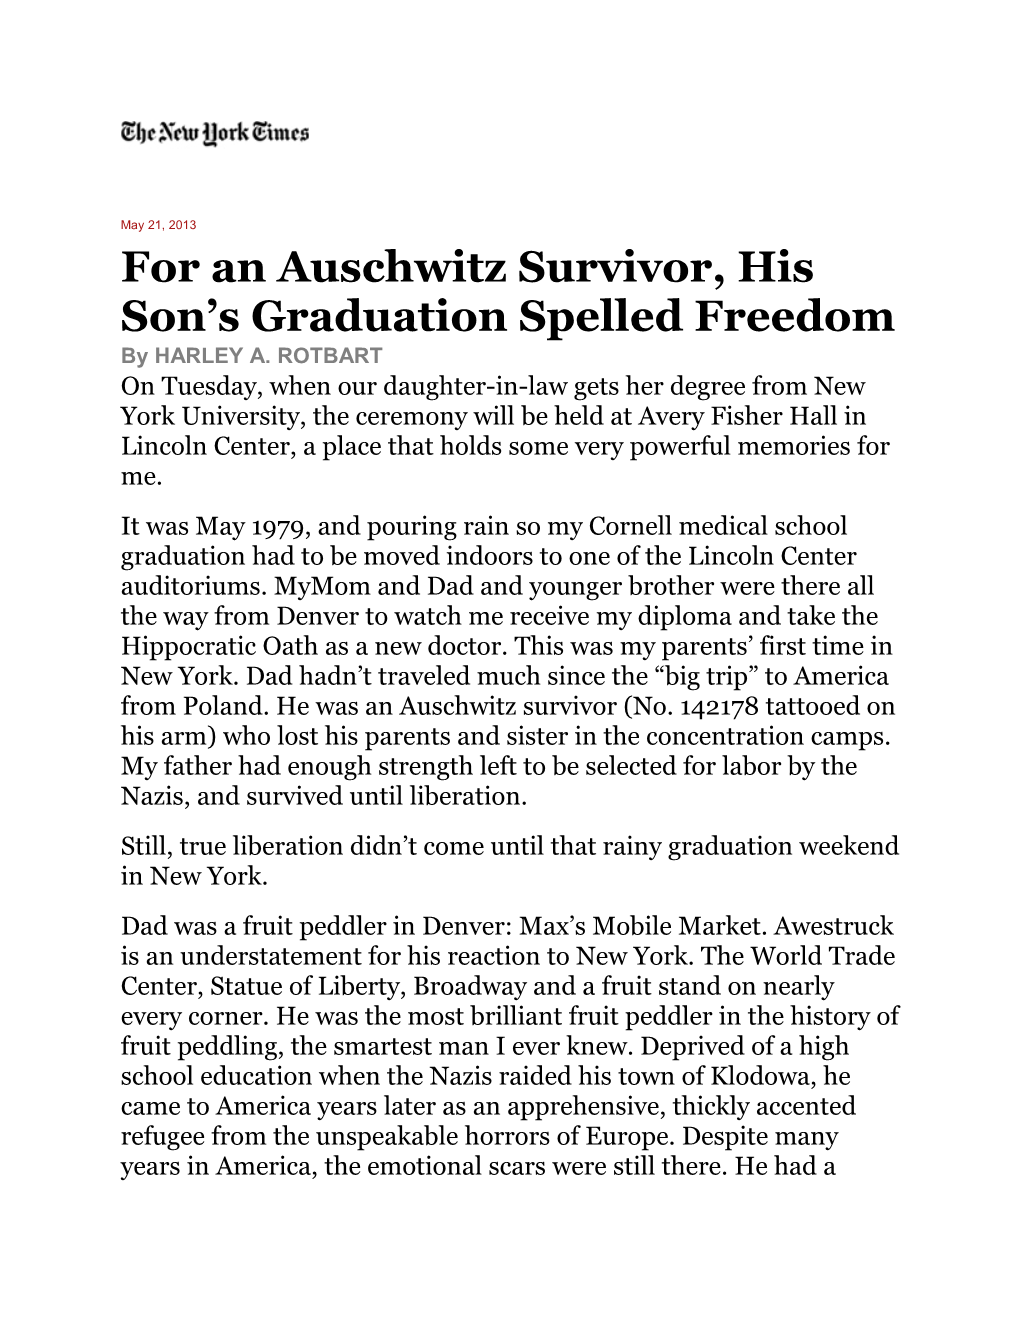 For an Auschwitz Survivor, His Son S Graduation Spelled Freedom